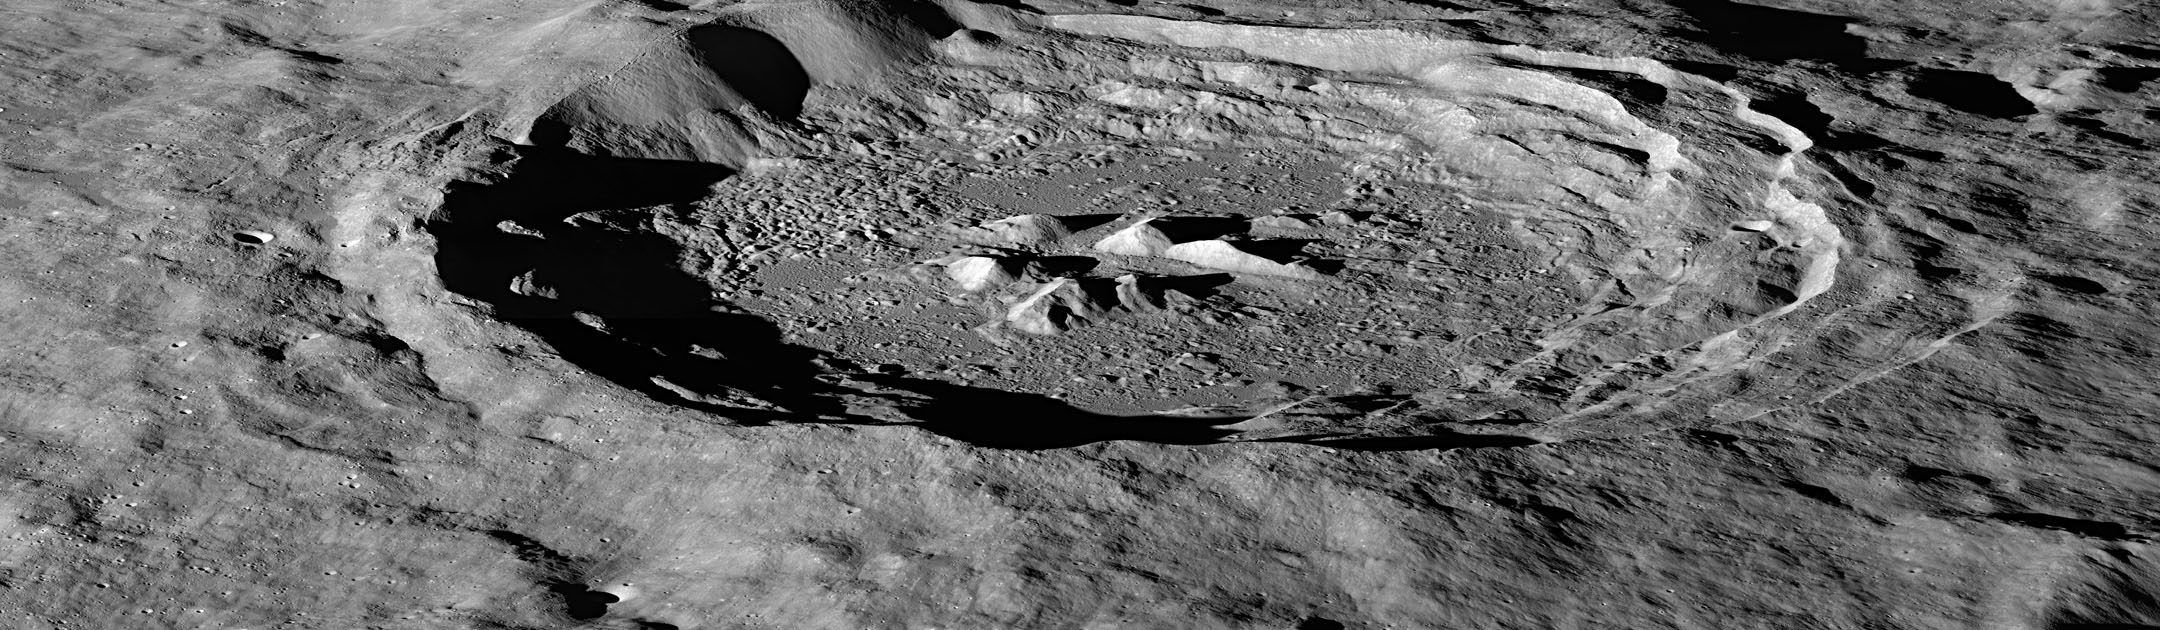 Что является образованием кратеров на луне. Кратер Терешковой на Луне. Кратер Герцшпрунг на Луне. Кратер на обратной стороне Луны. Посидоний (лунный кратер).